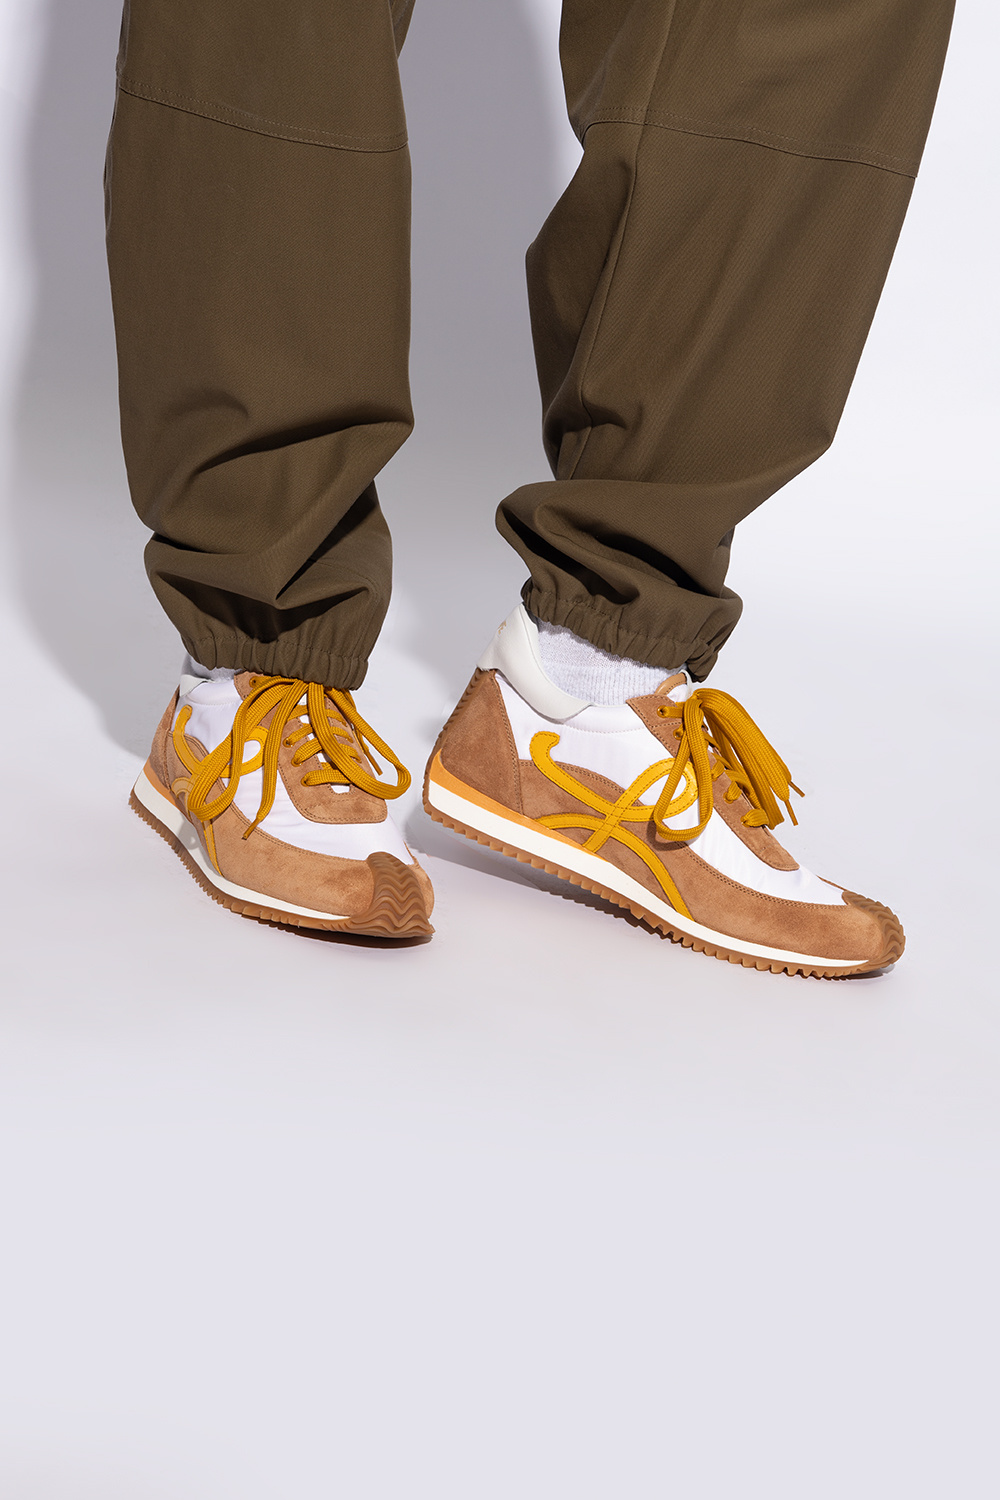 Loewe ‘Flow’ sneakers